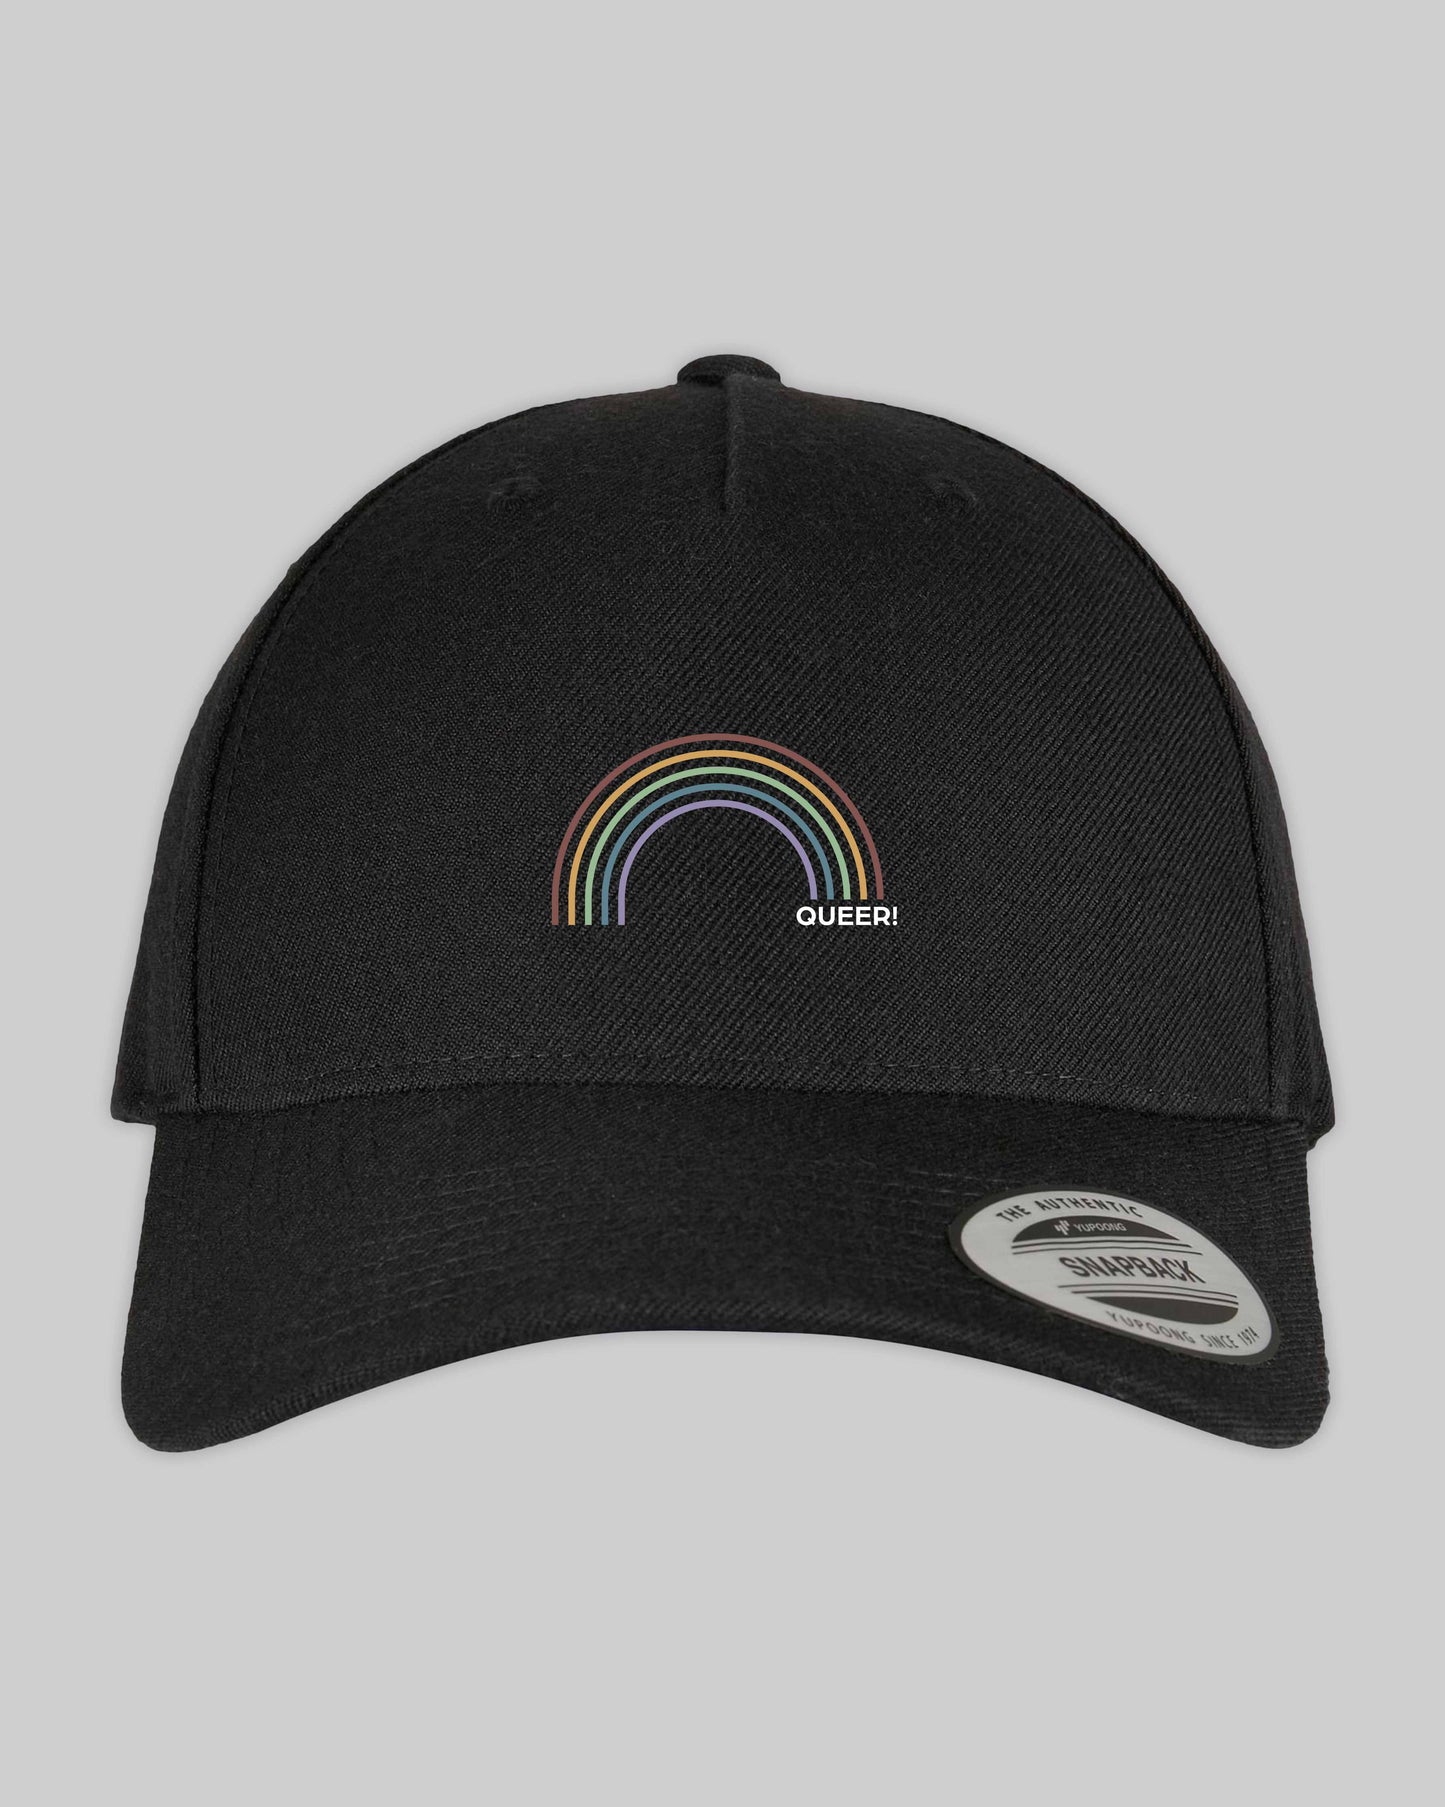 Snapback Cap "queer Regenbogen" in 6 verschiedenen Farben